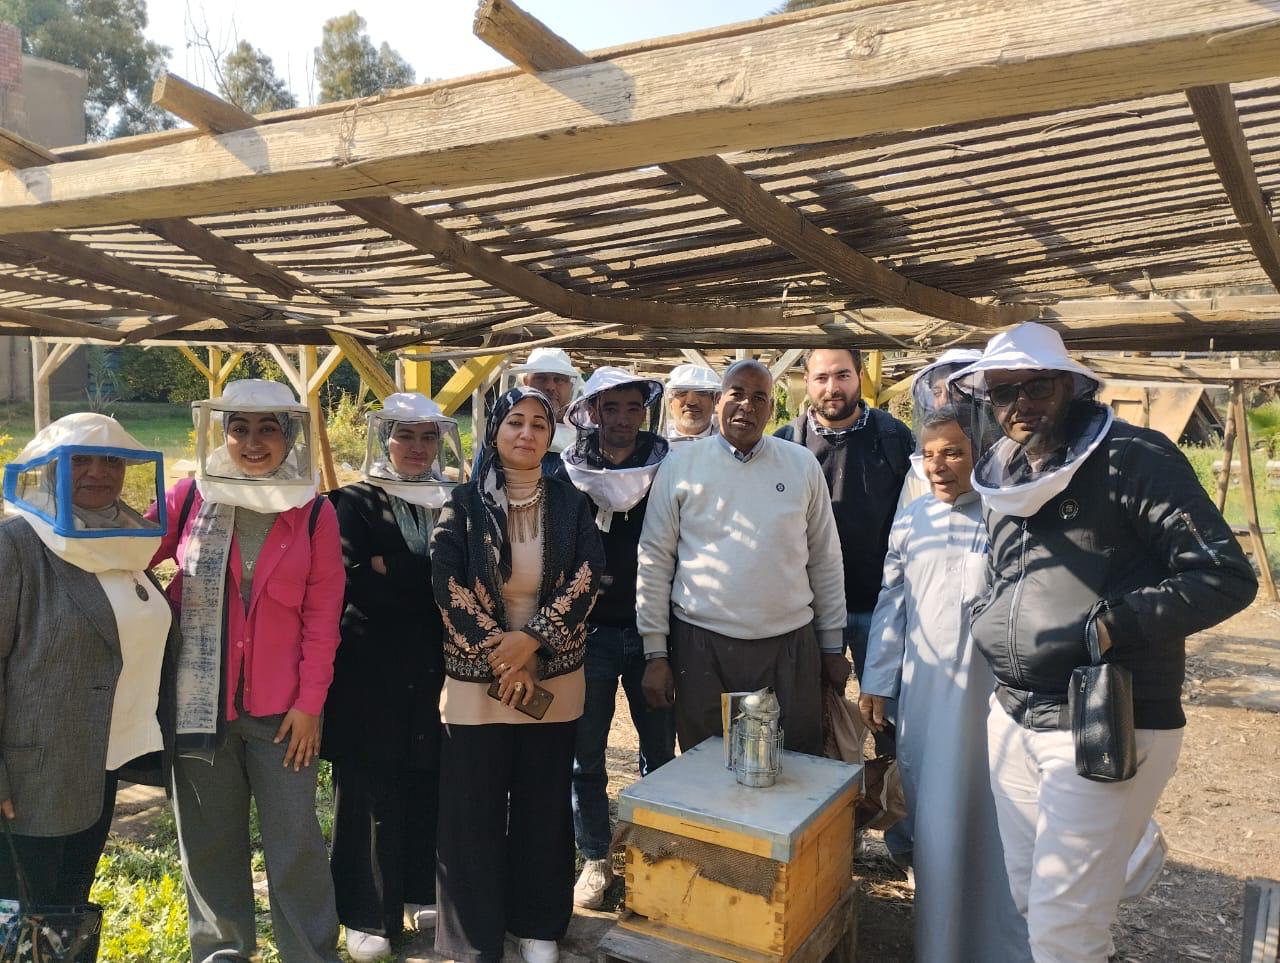 وقاية النباتات: برامج تدريبية تهدف إلى تعزيز إنشاء المناحل وتربية نحل العسل في محافظات مصر.